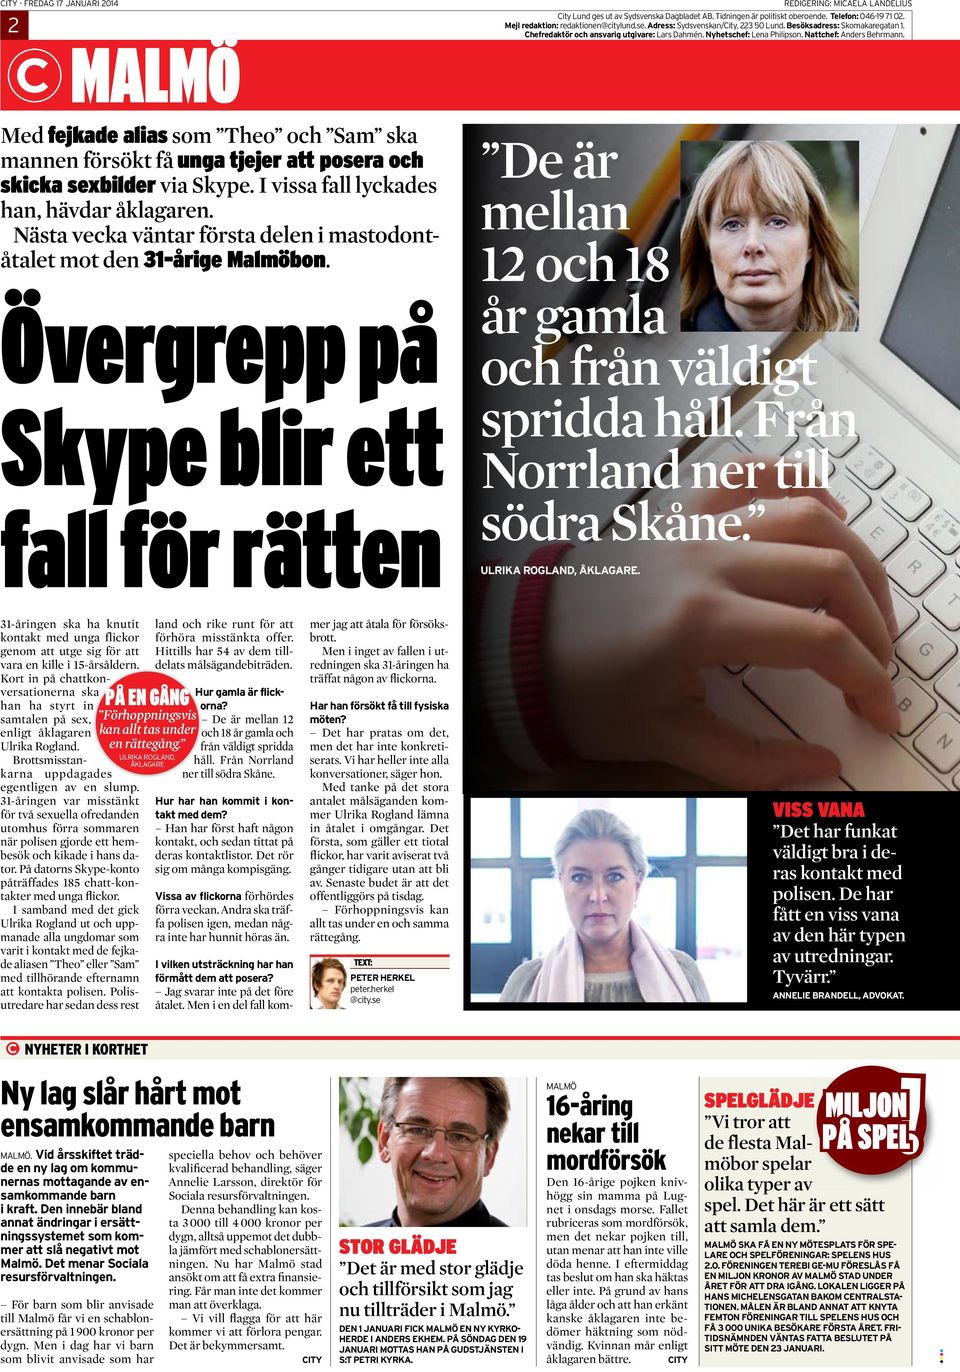 Tidningen är politiskt oberoende. Telefon: 046-19 71 02. Mejl redaktion: redaktionen@citylund.se. Adress: Sydsvenskan/City, 223 50 Lund. Besöksadress: Skomakaregatan 1.